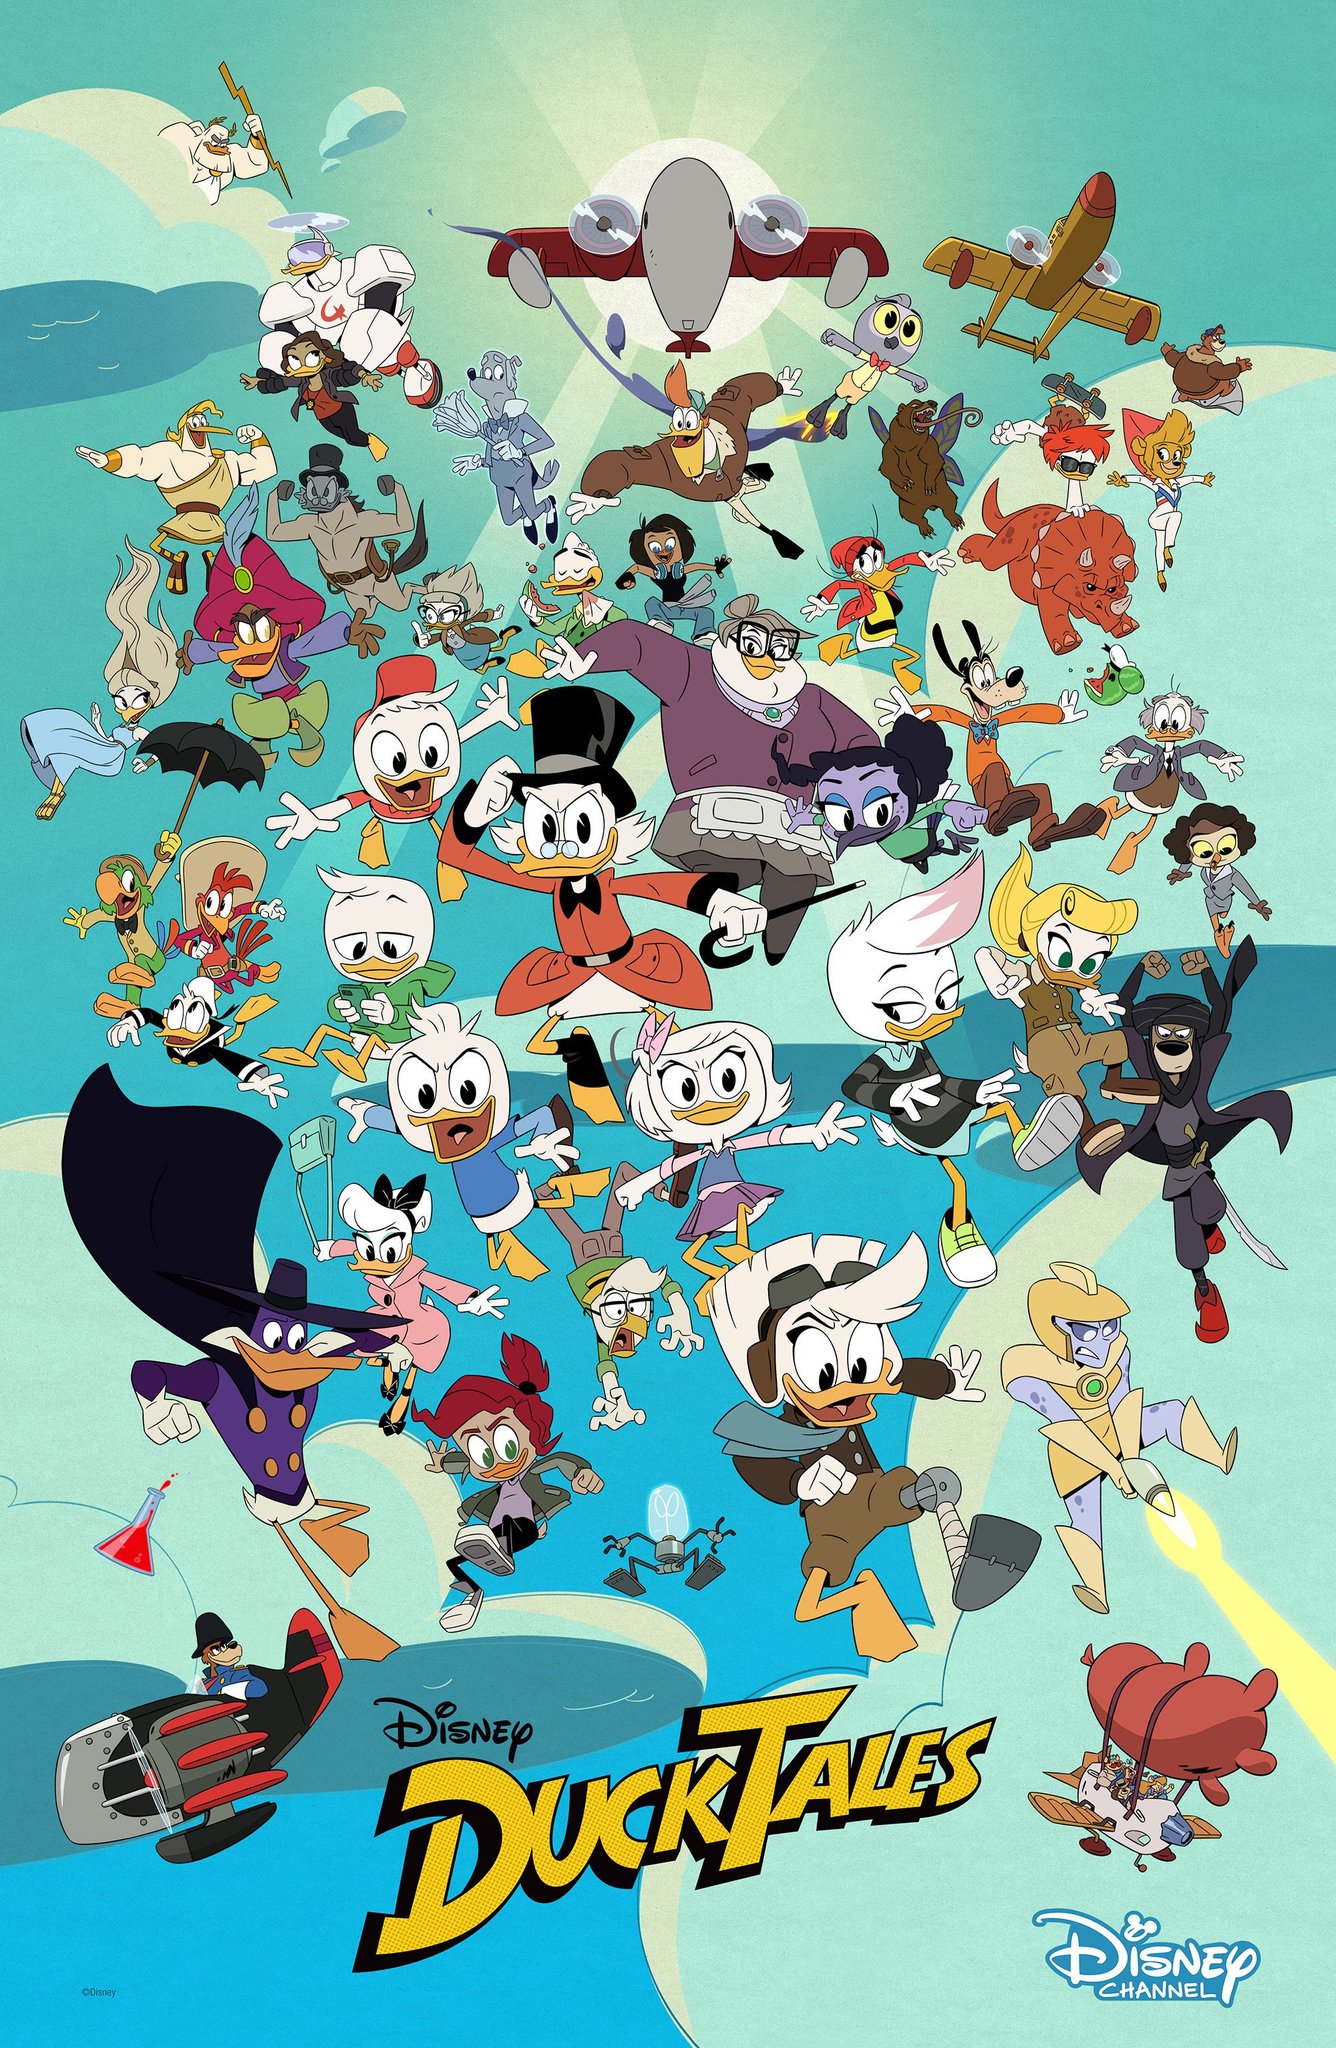 Ducktales 2017 Series Disney Channel Wiki Fandom